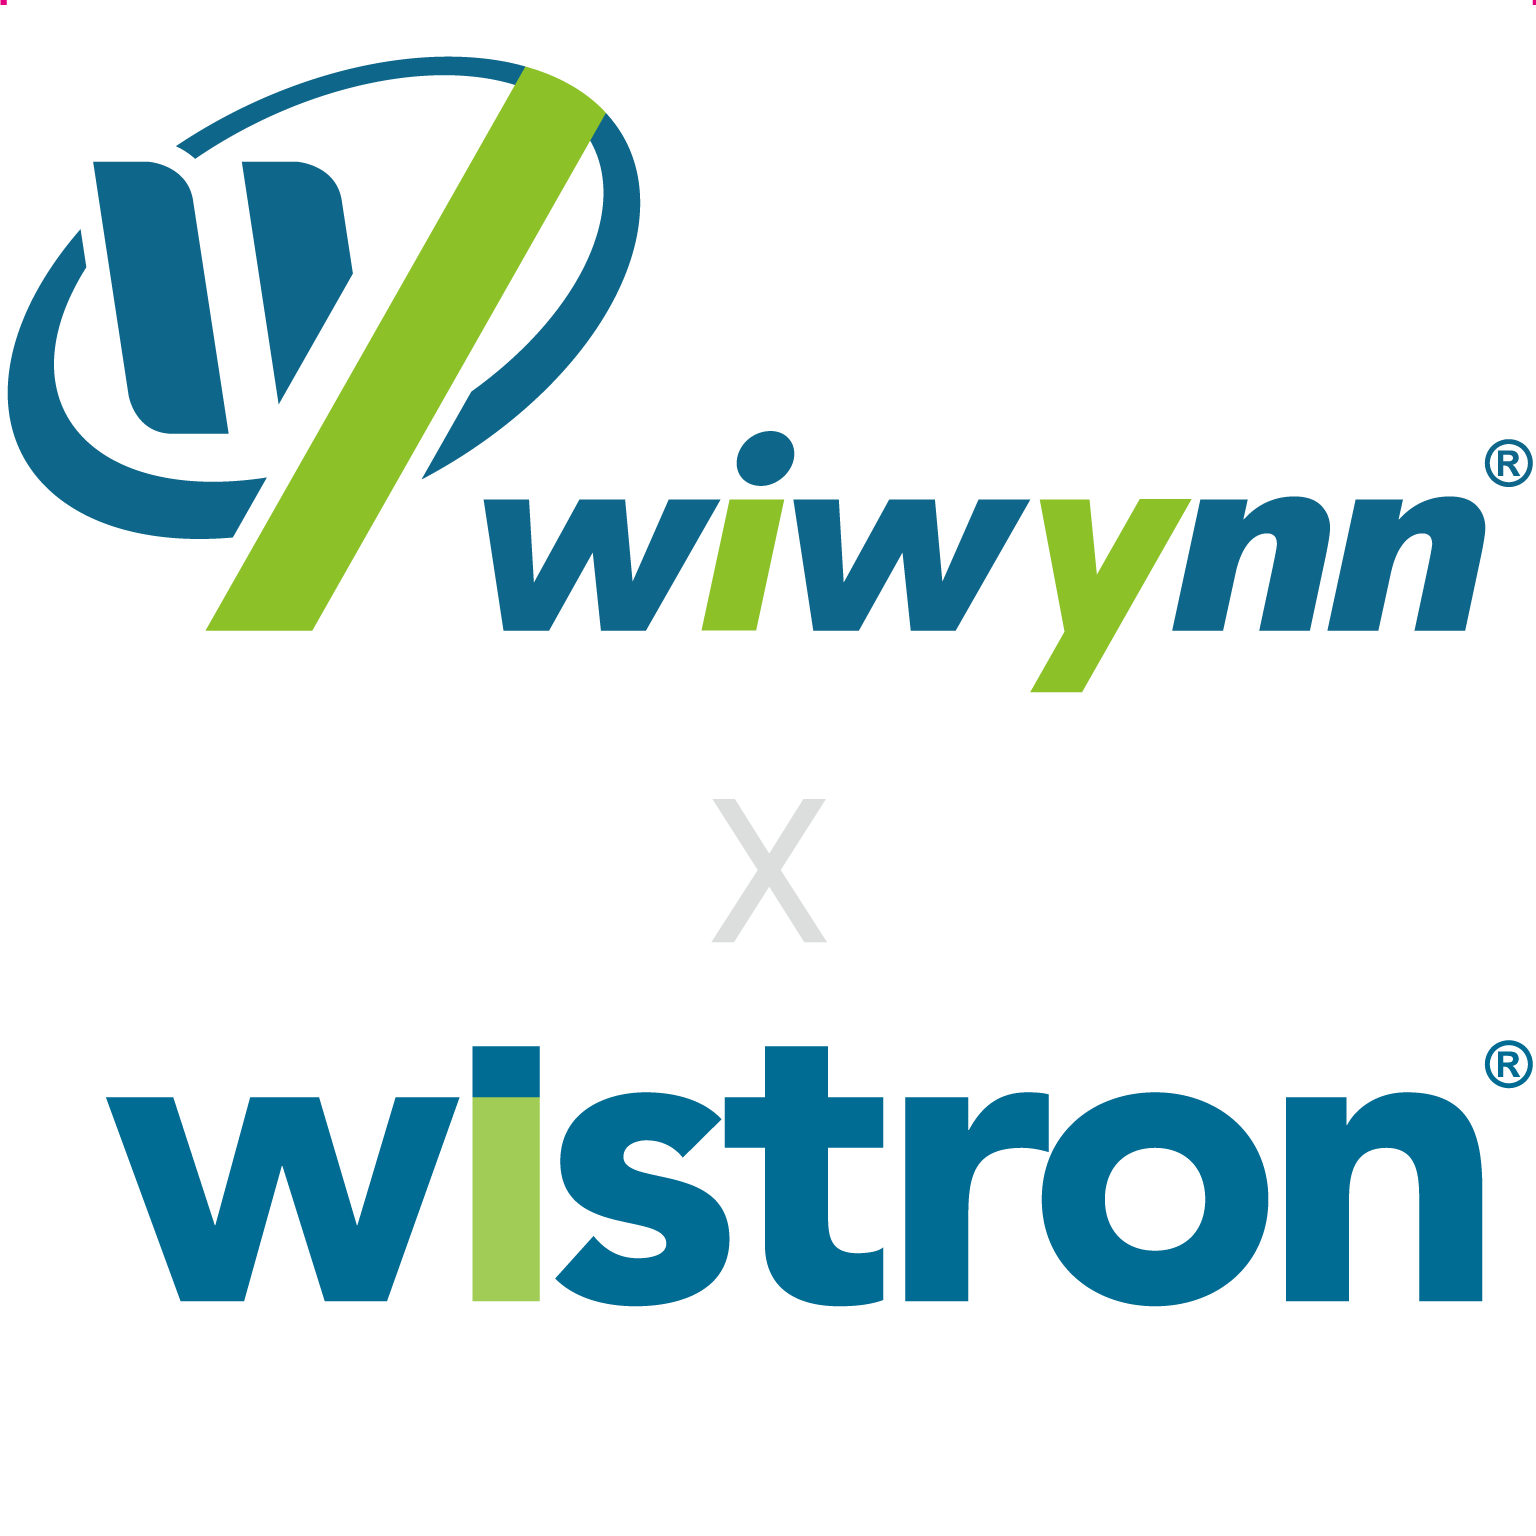 Wiwynn & Wistron logo